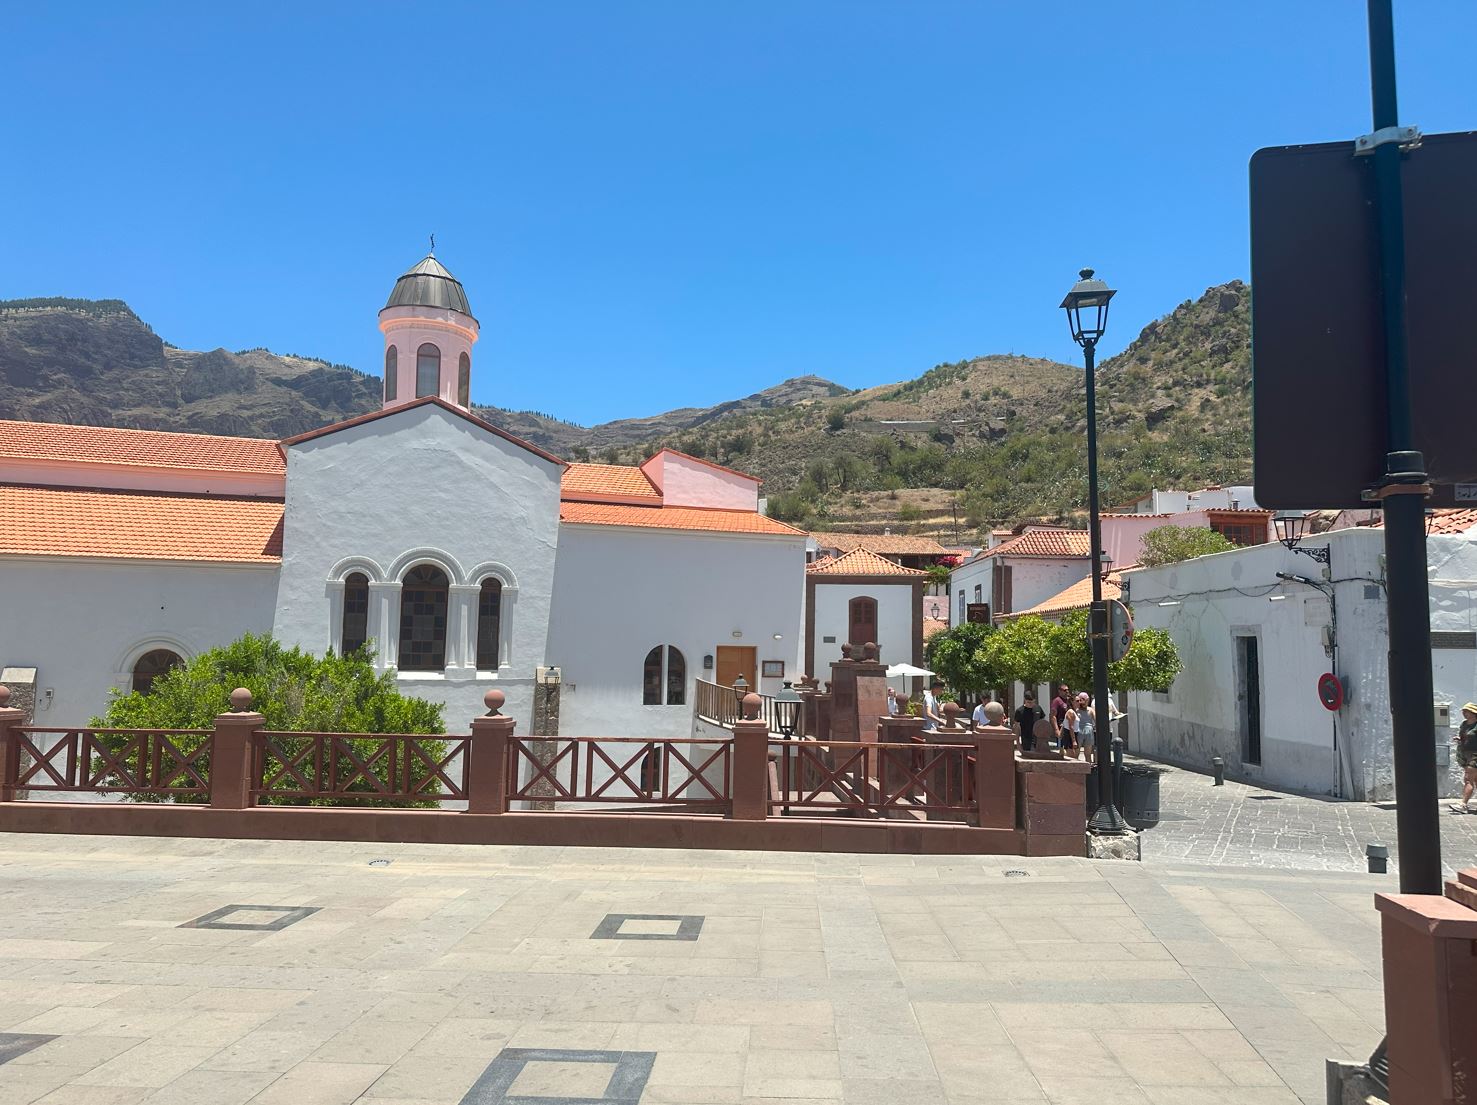 Tejeda, Gran Canaria